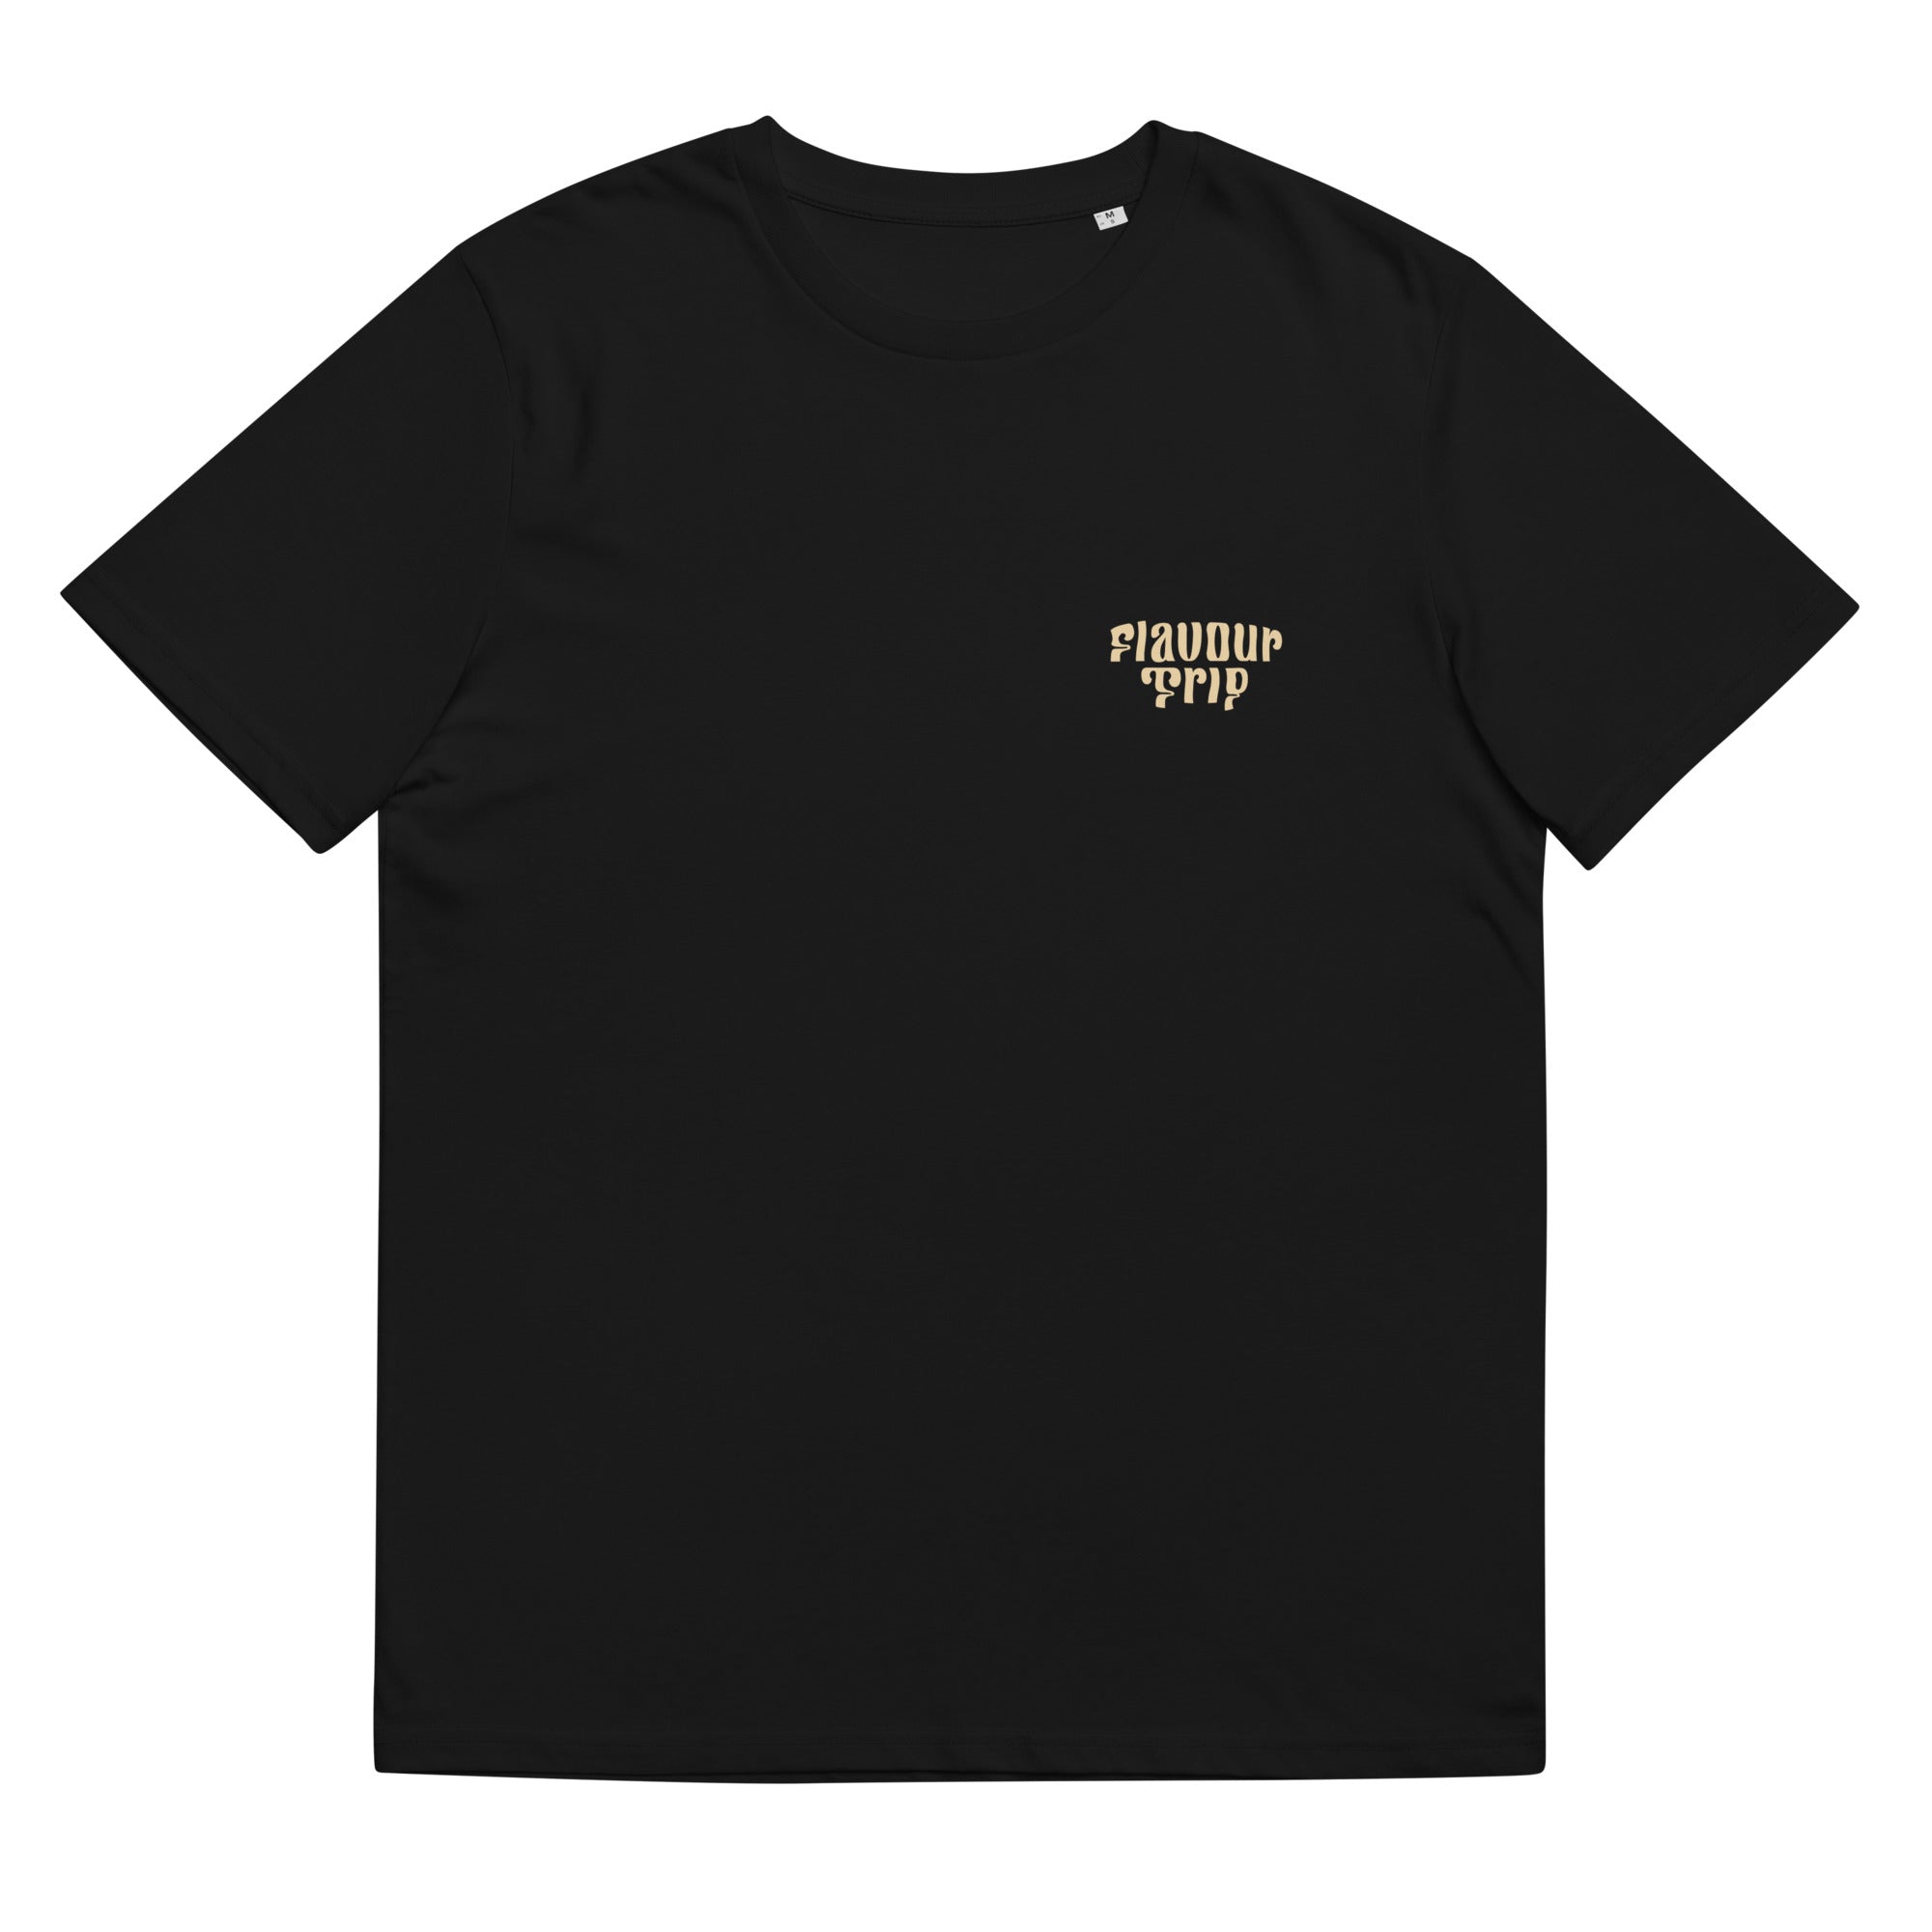 FLAVOUR FIESTA - Black/Beige T-Shirt Unisex